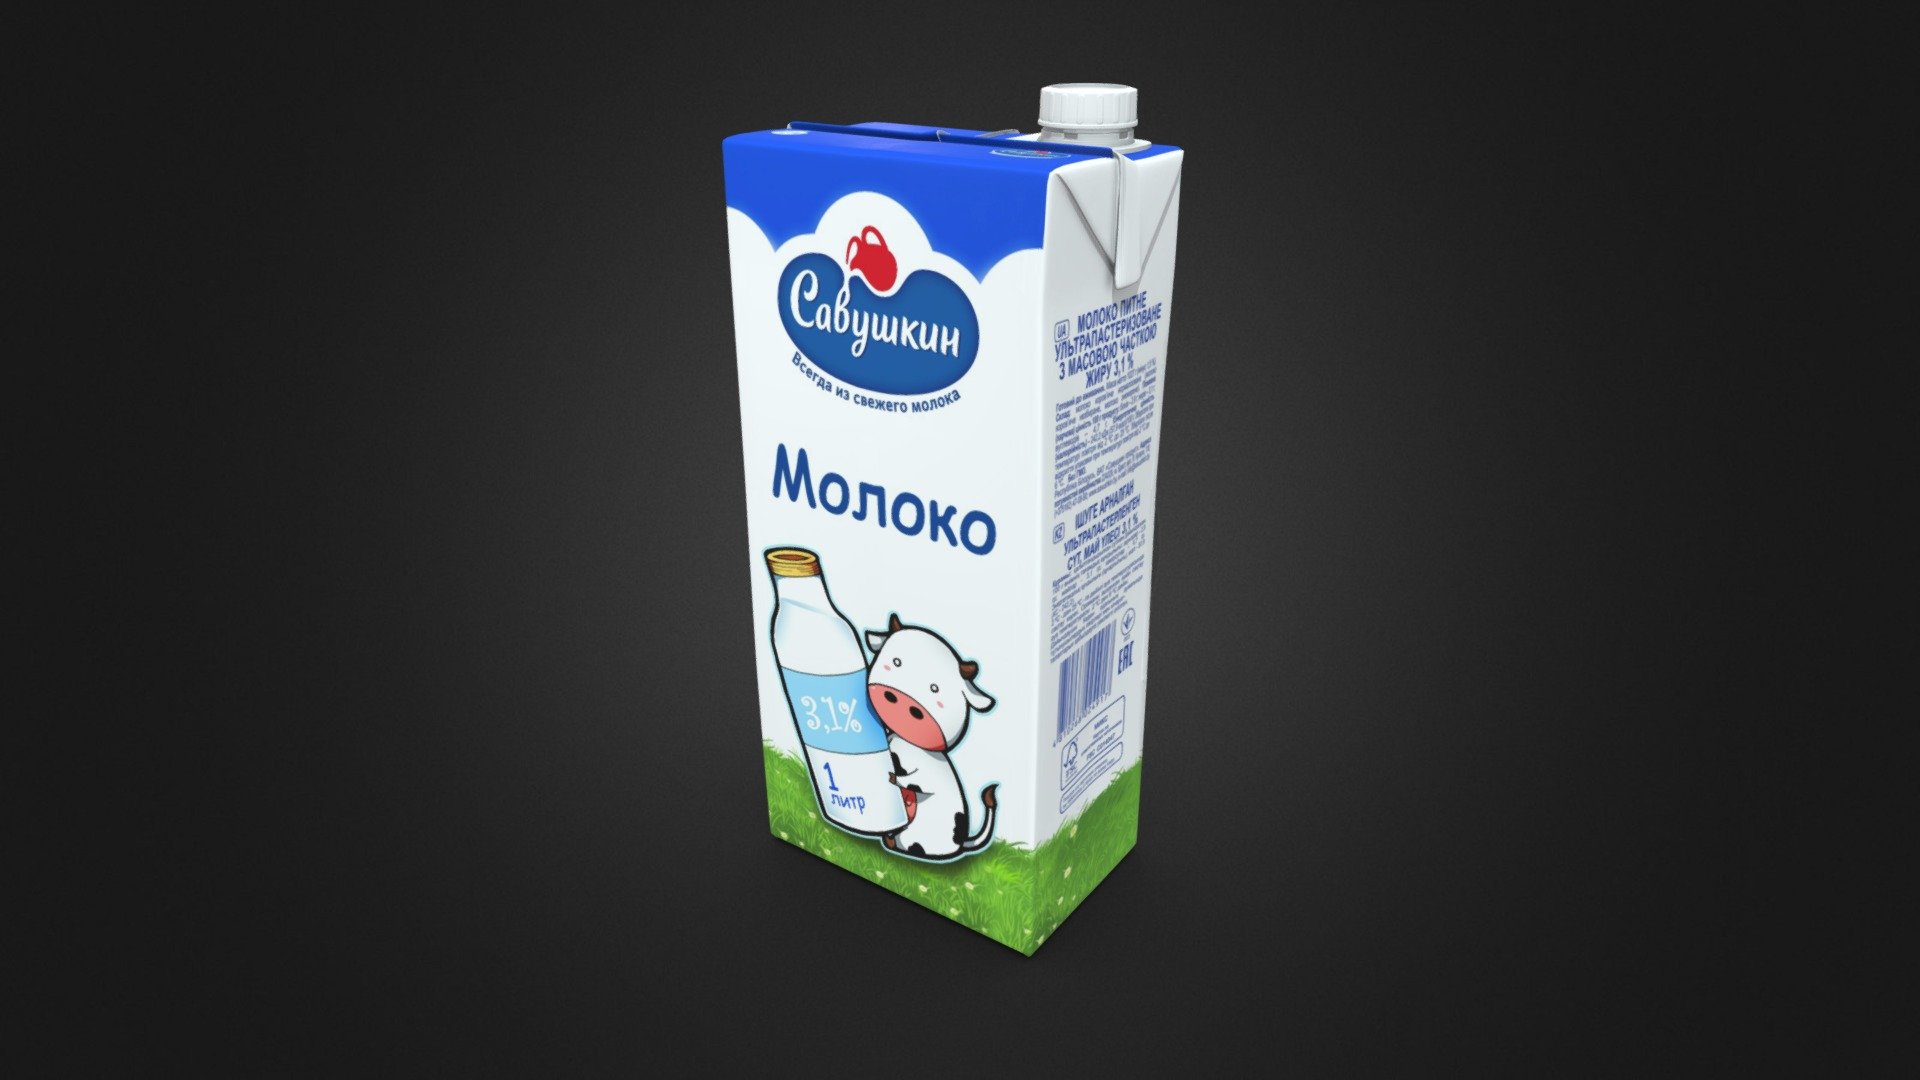 Молоко в пакетах. Пачка молока. Пакет молока. Савушкин молоко. Упаковка молочной продукции Савушкин.